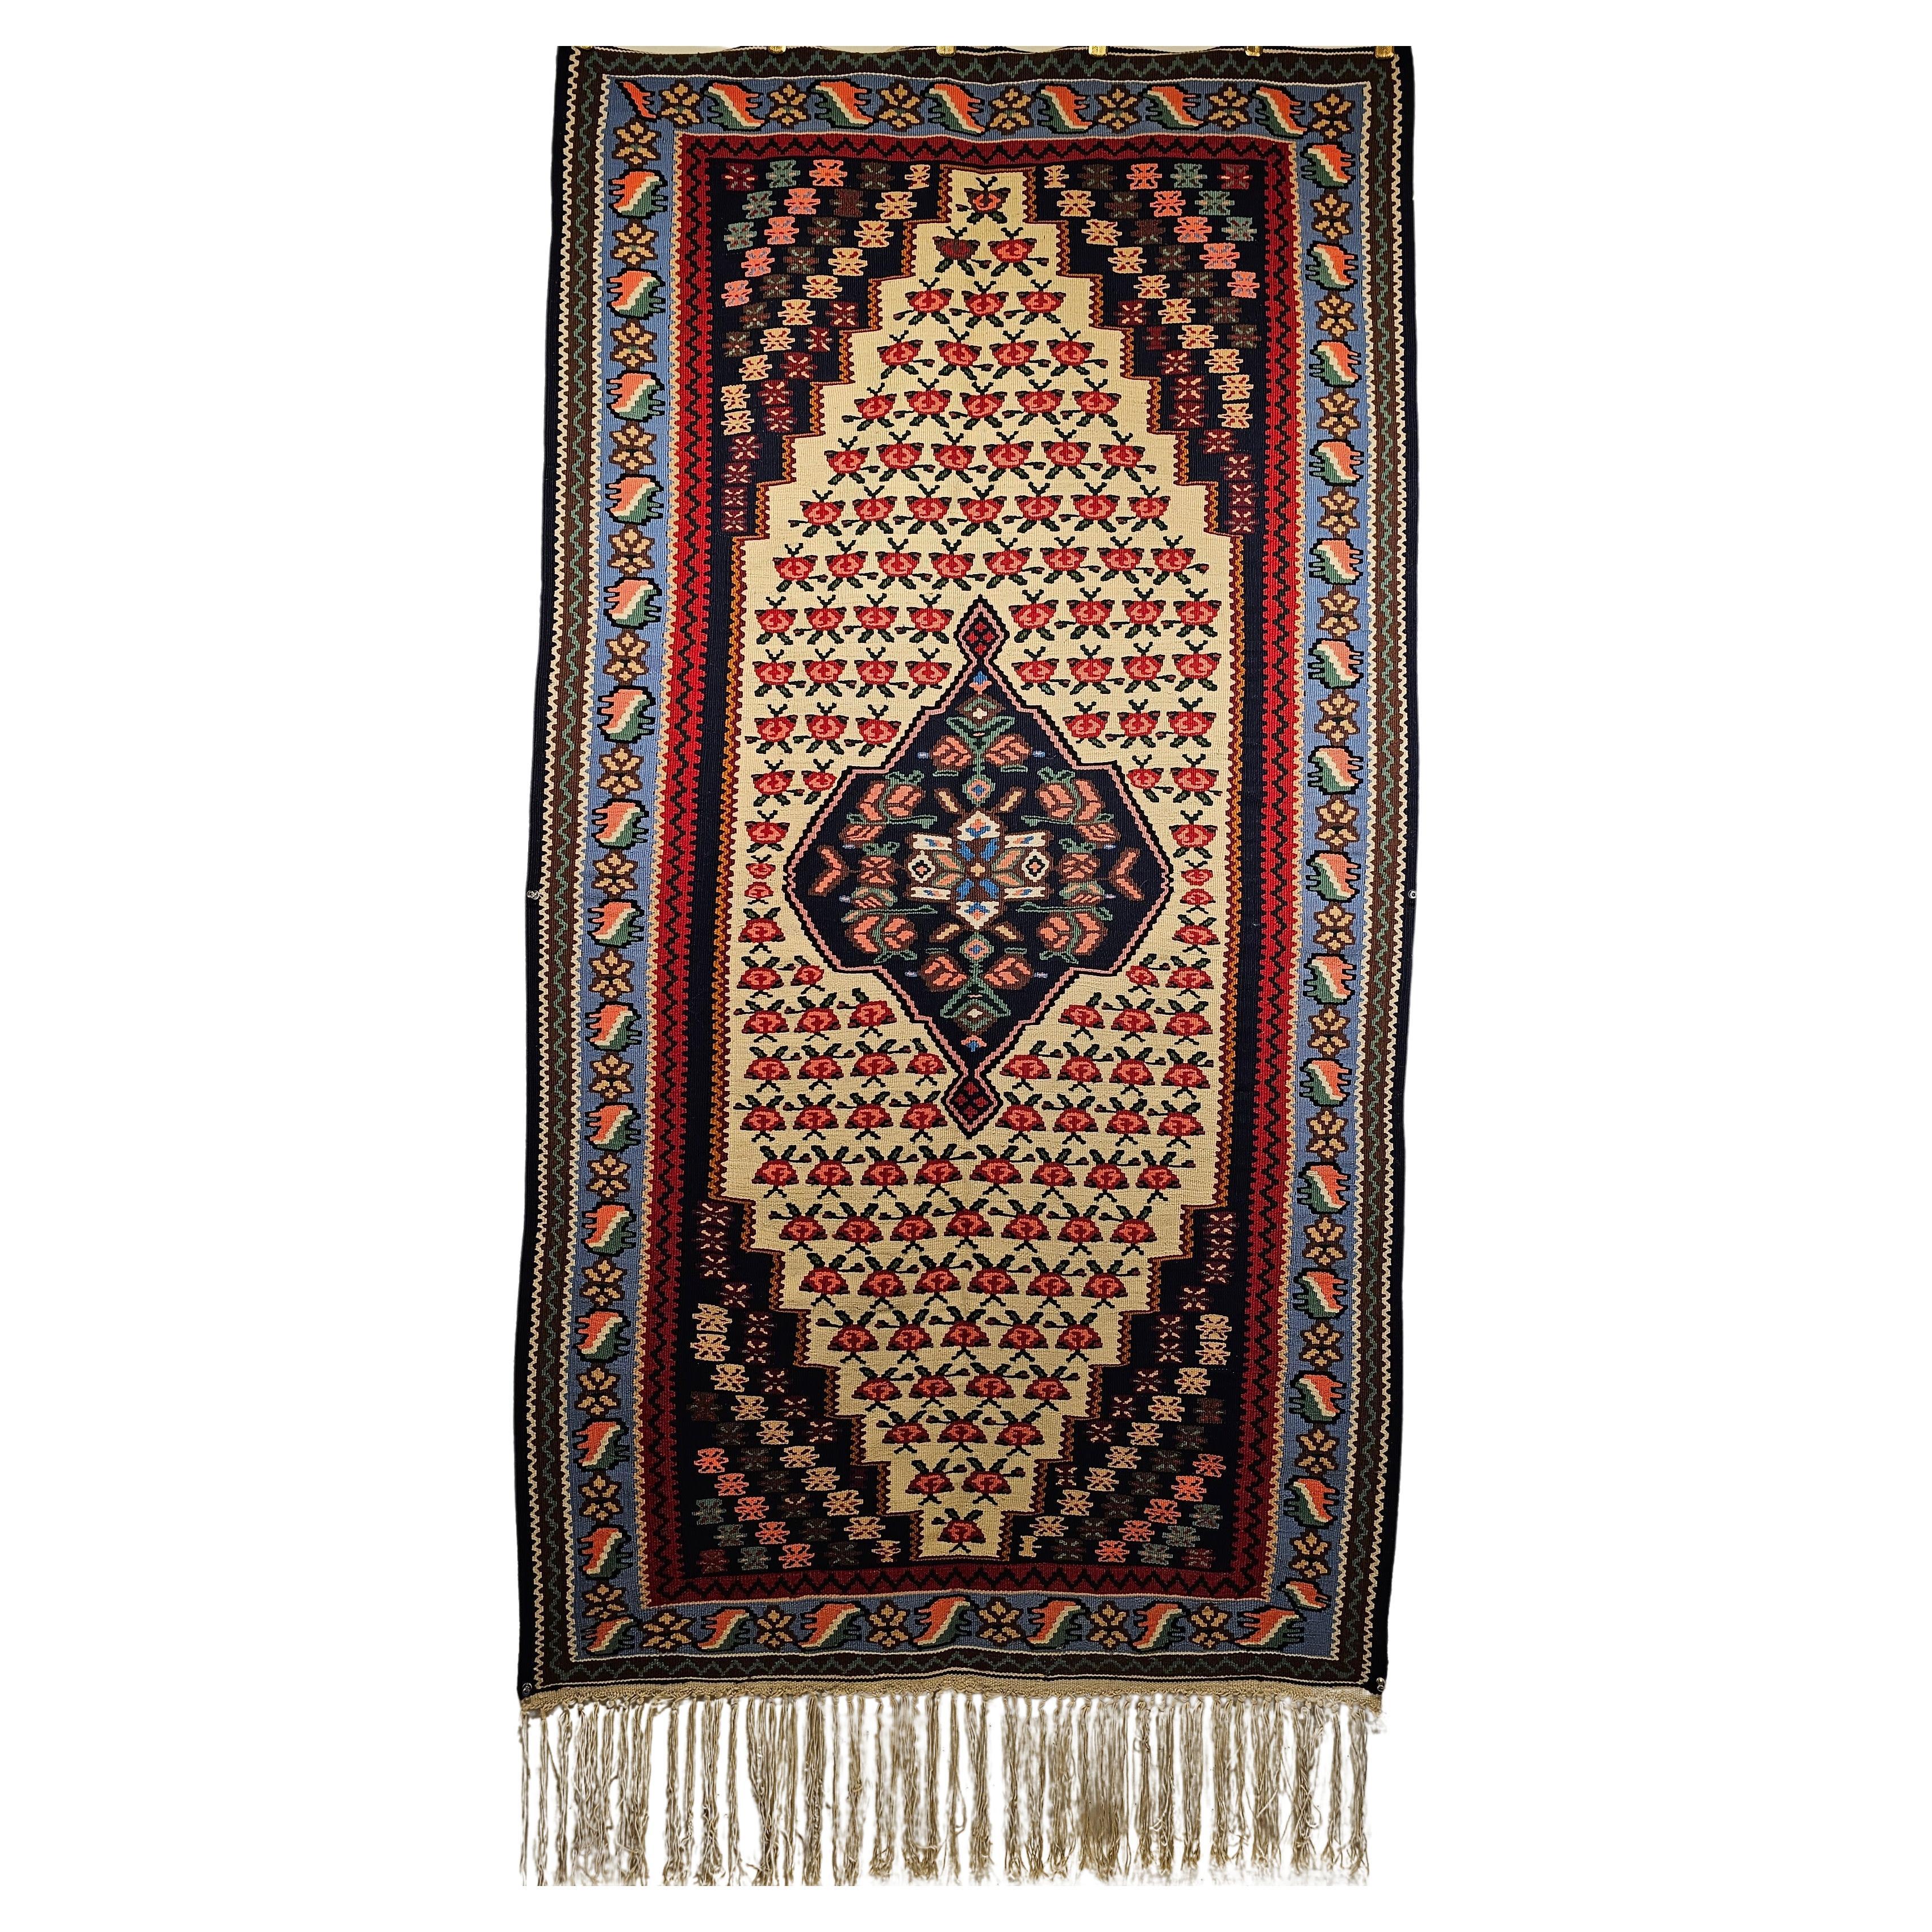 Persischer Senneh-Kelim-Teppich in geometrischem Design in Rot, Blau, Elfenbein